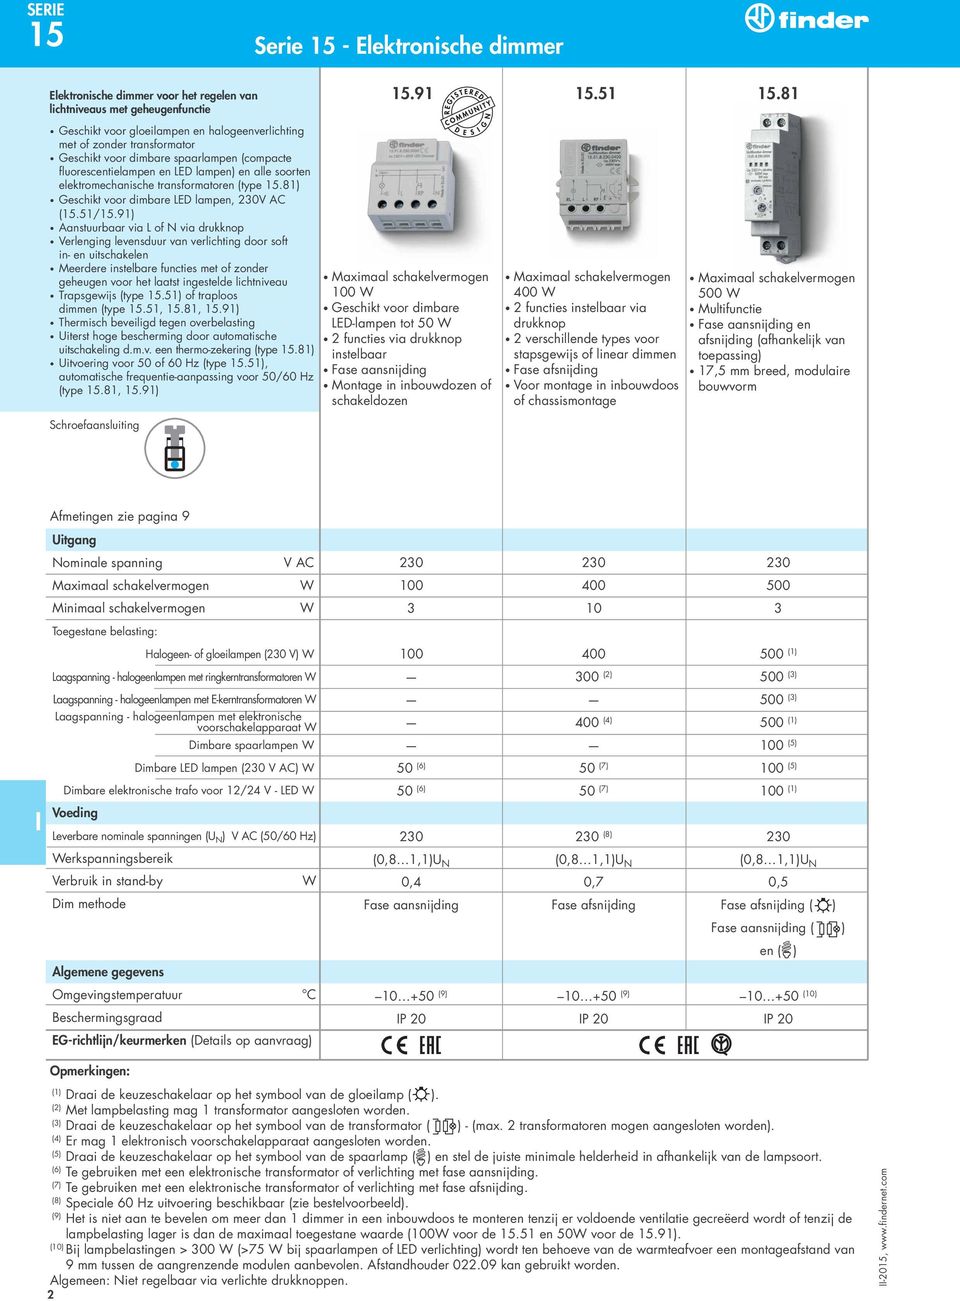 transformatoren (type 15.81) Geschikt voor dimbare ED lampen, 230V AC (15.51/15.